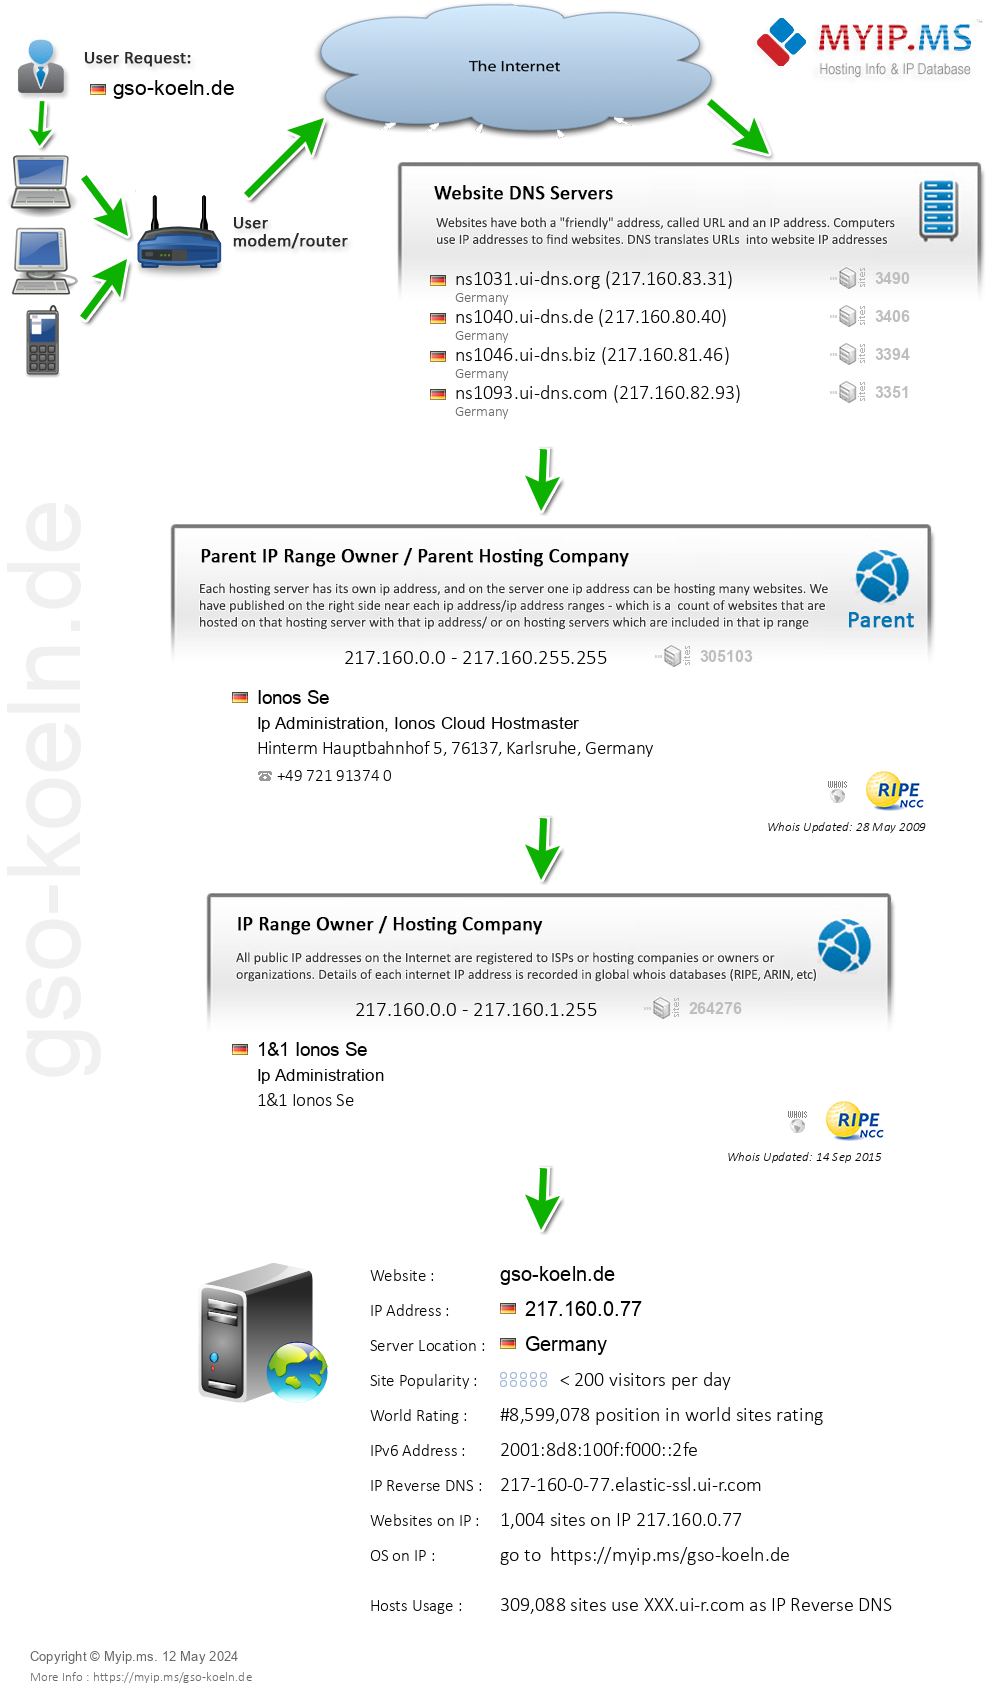 Gso-koeln.de - Website Hosting Visual IP Diagram